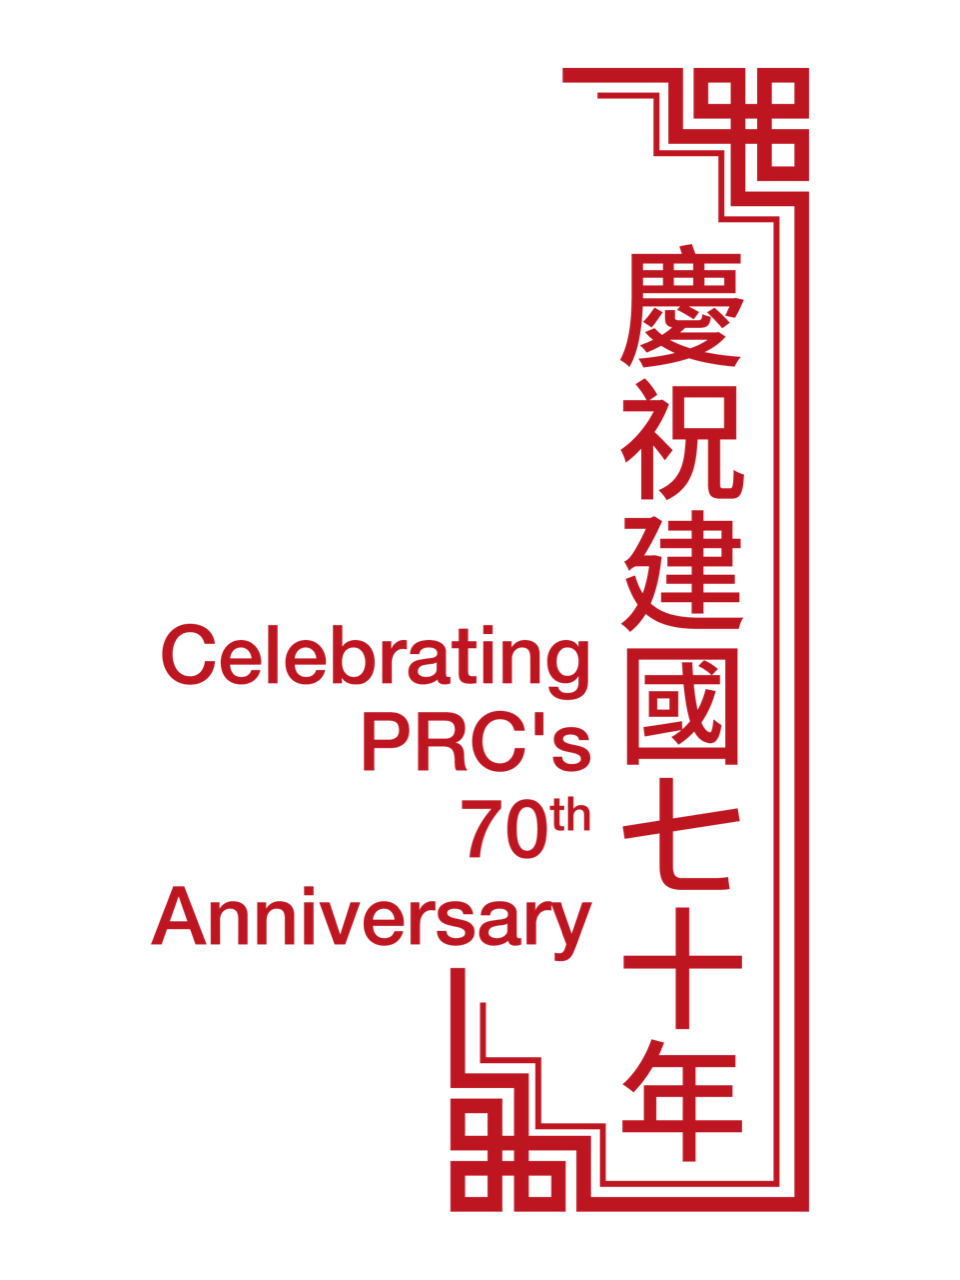 PRC's 70th Anniversary